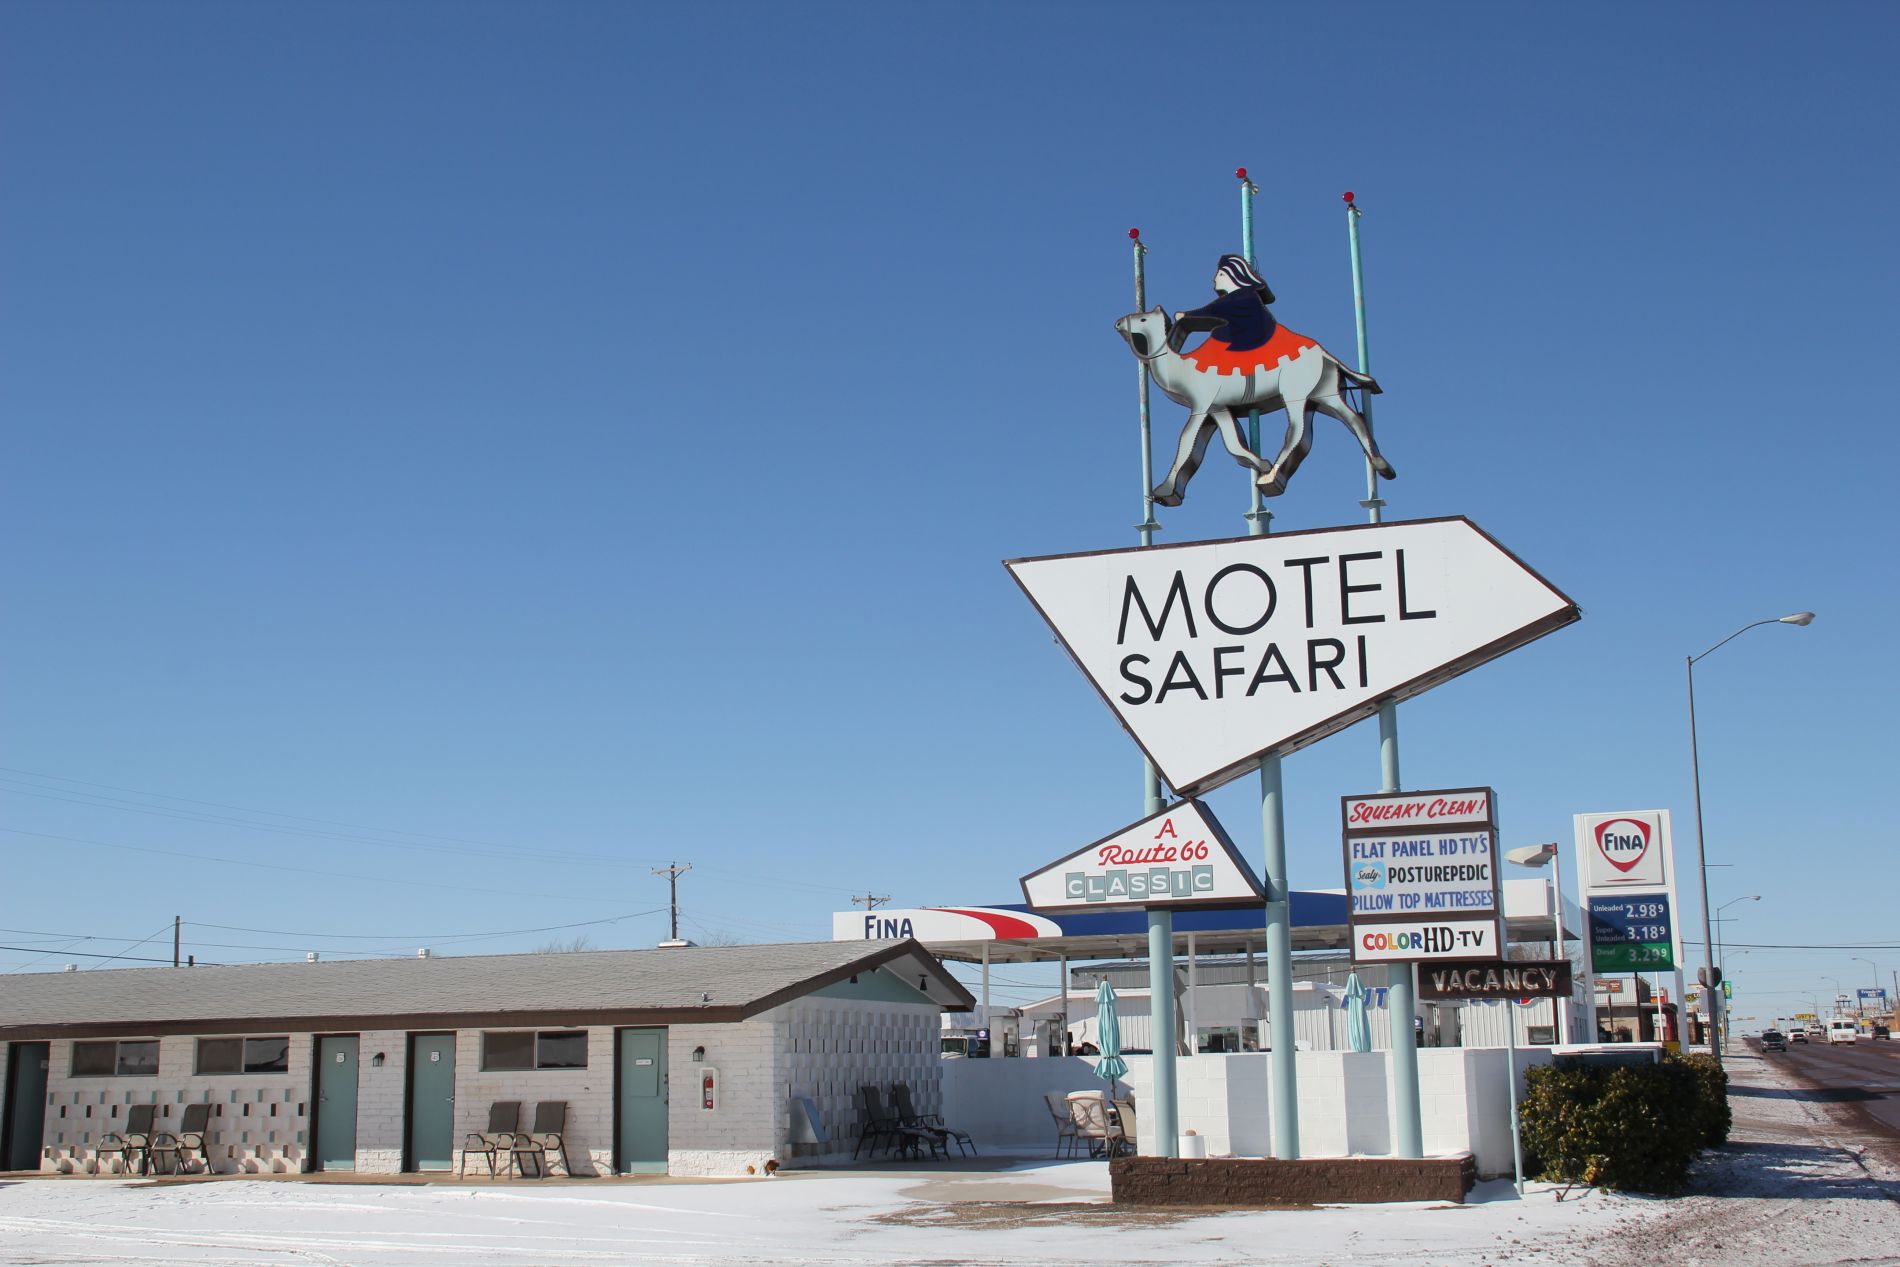 Motel Safari in Tucumcari, New Mexico